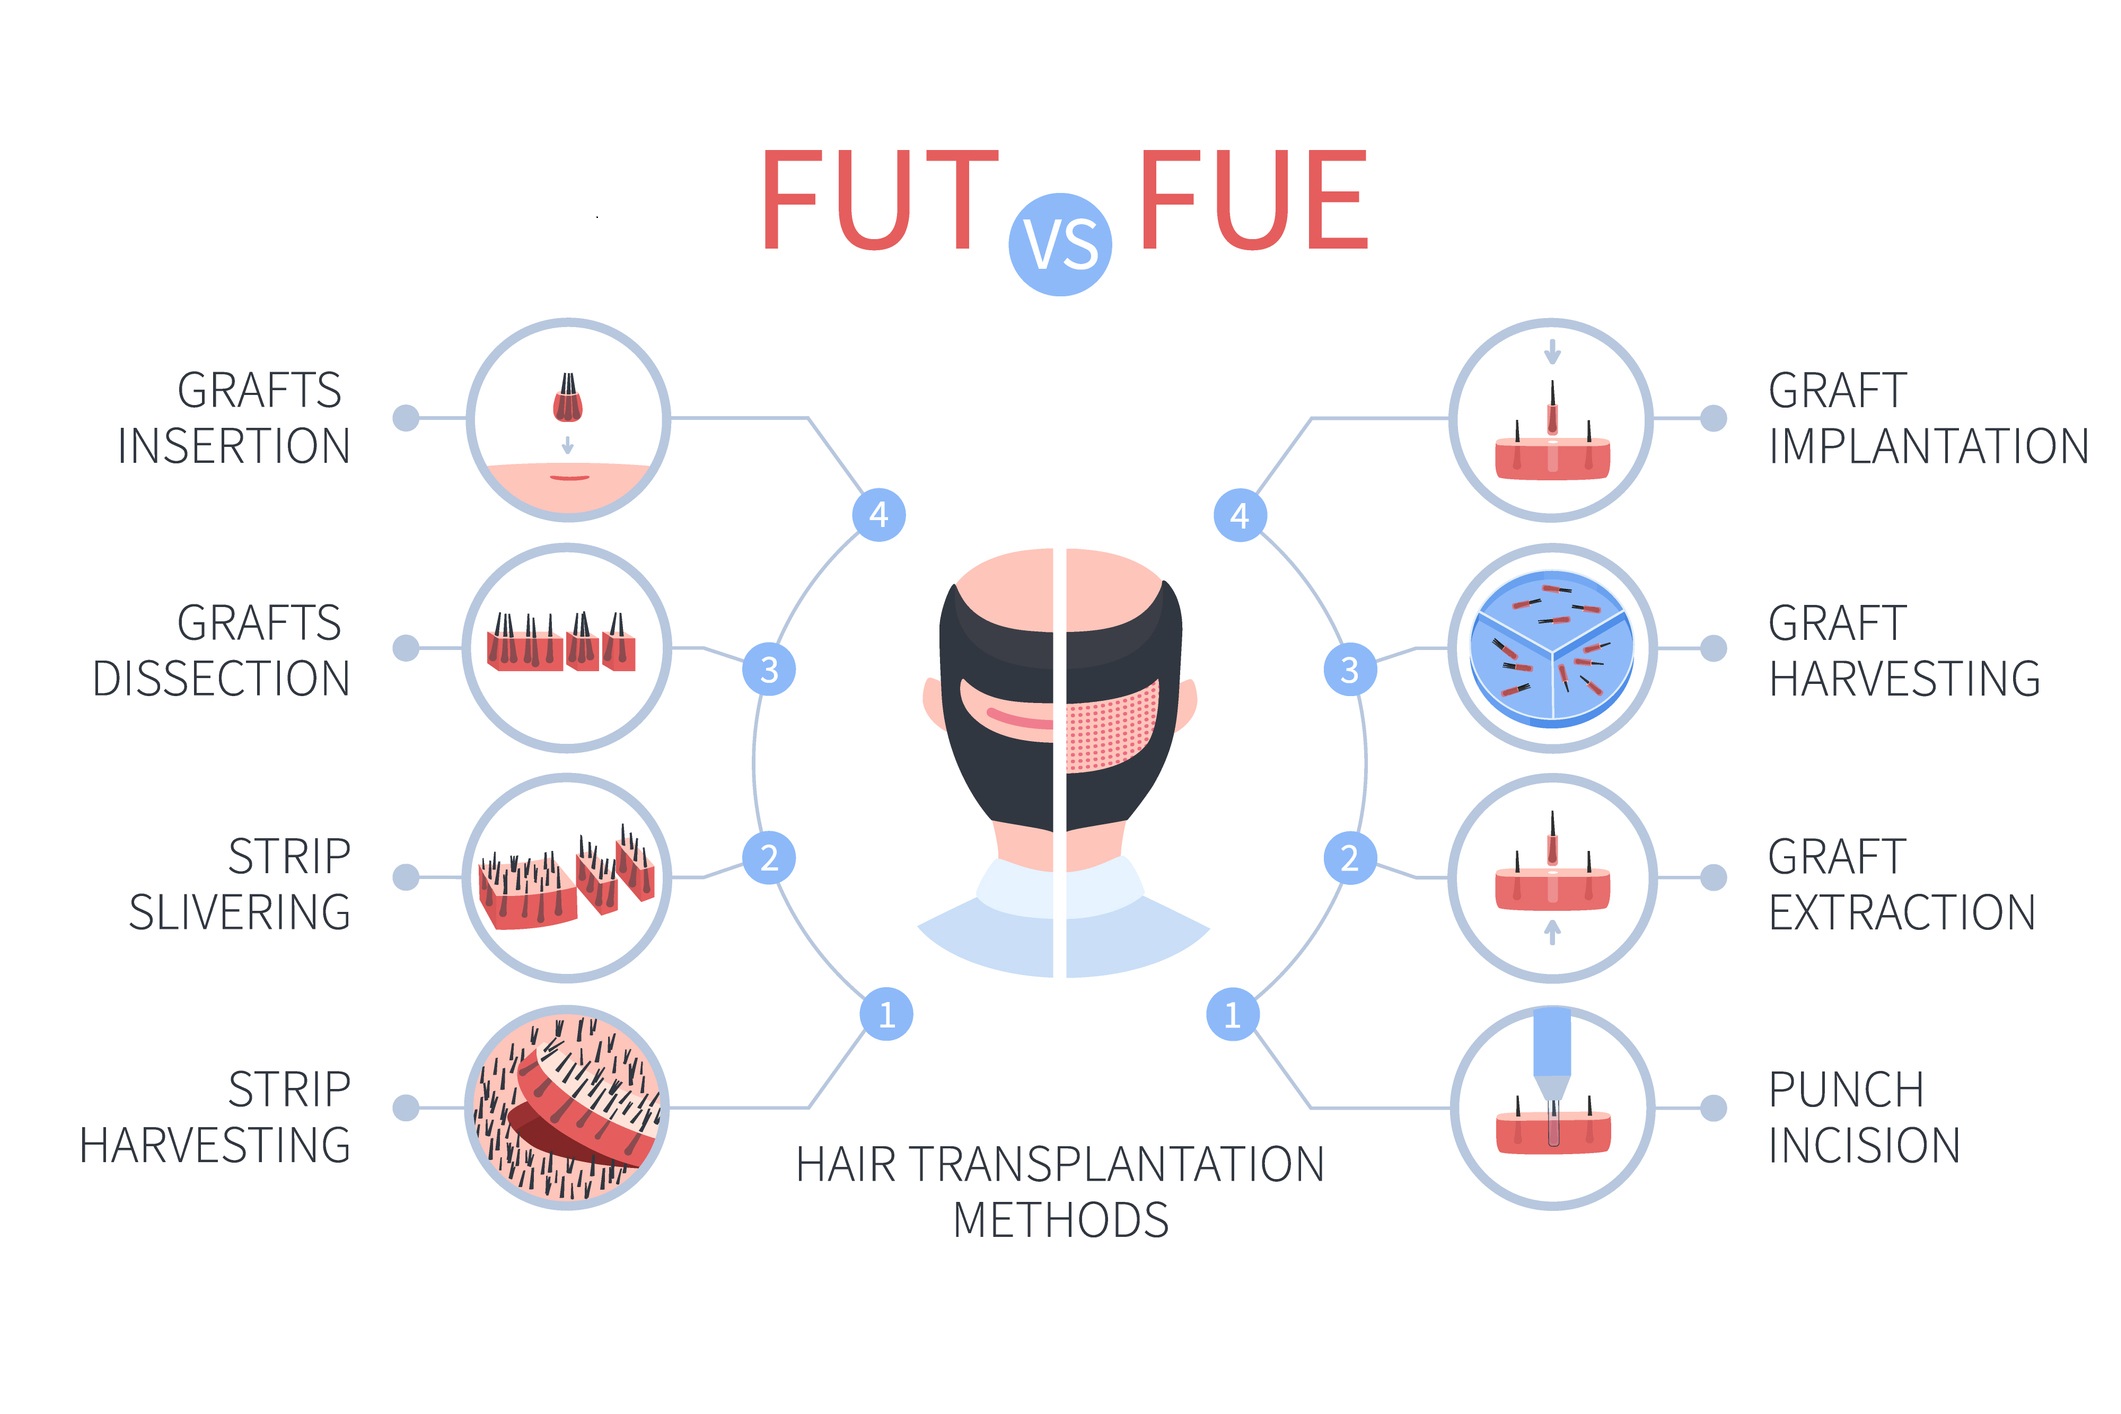 Hair Transplantation Methods